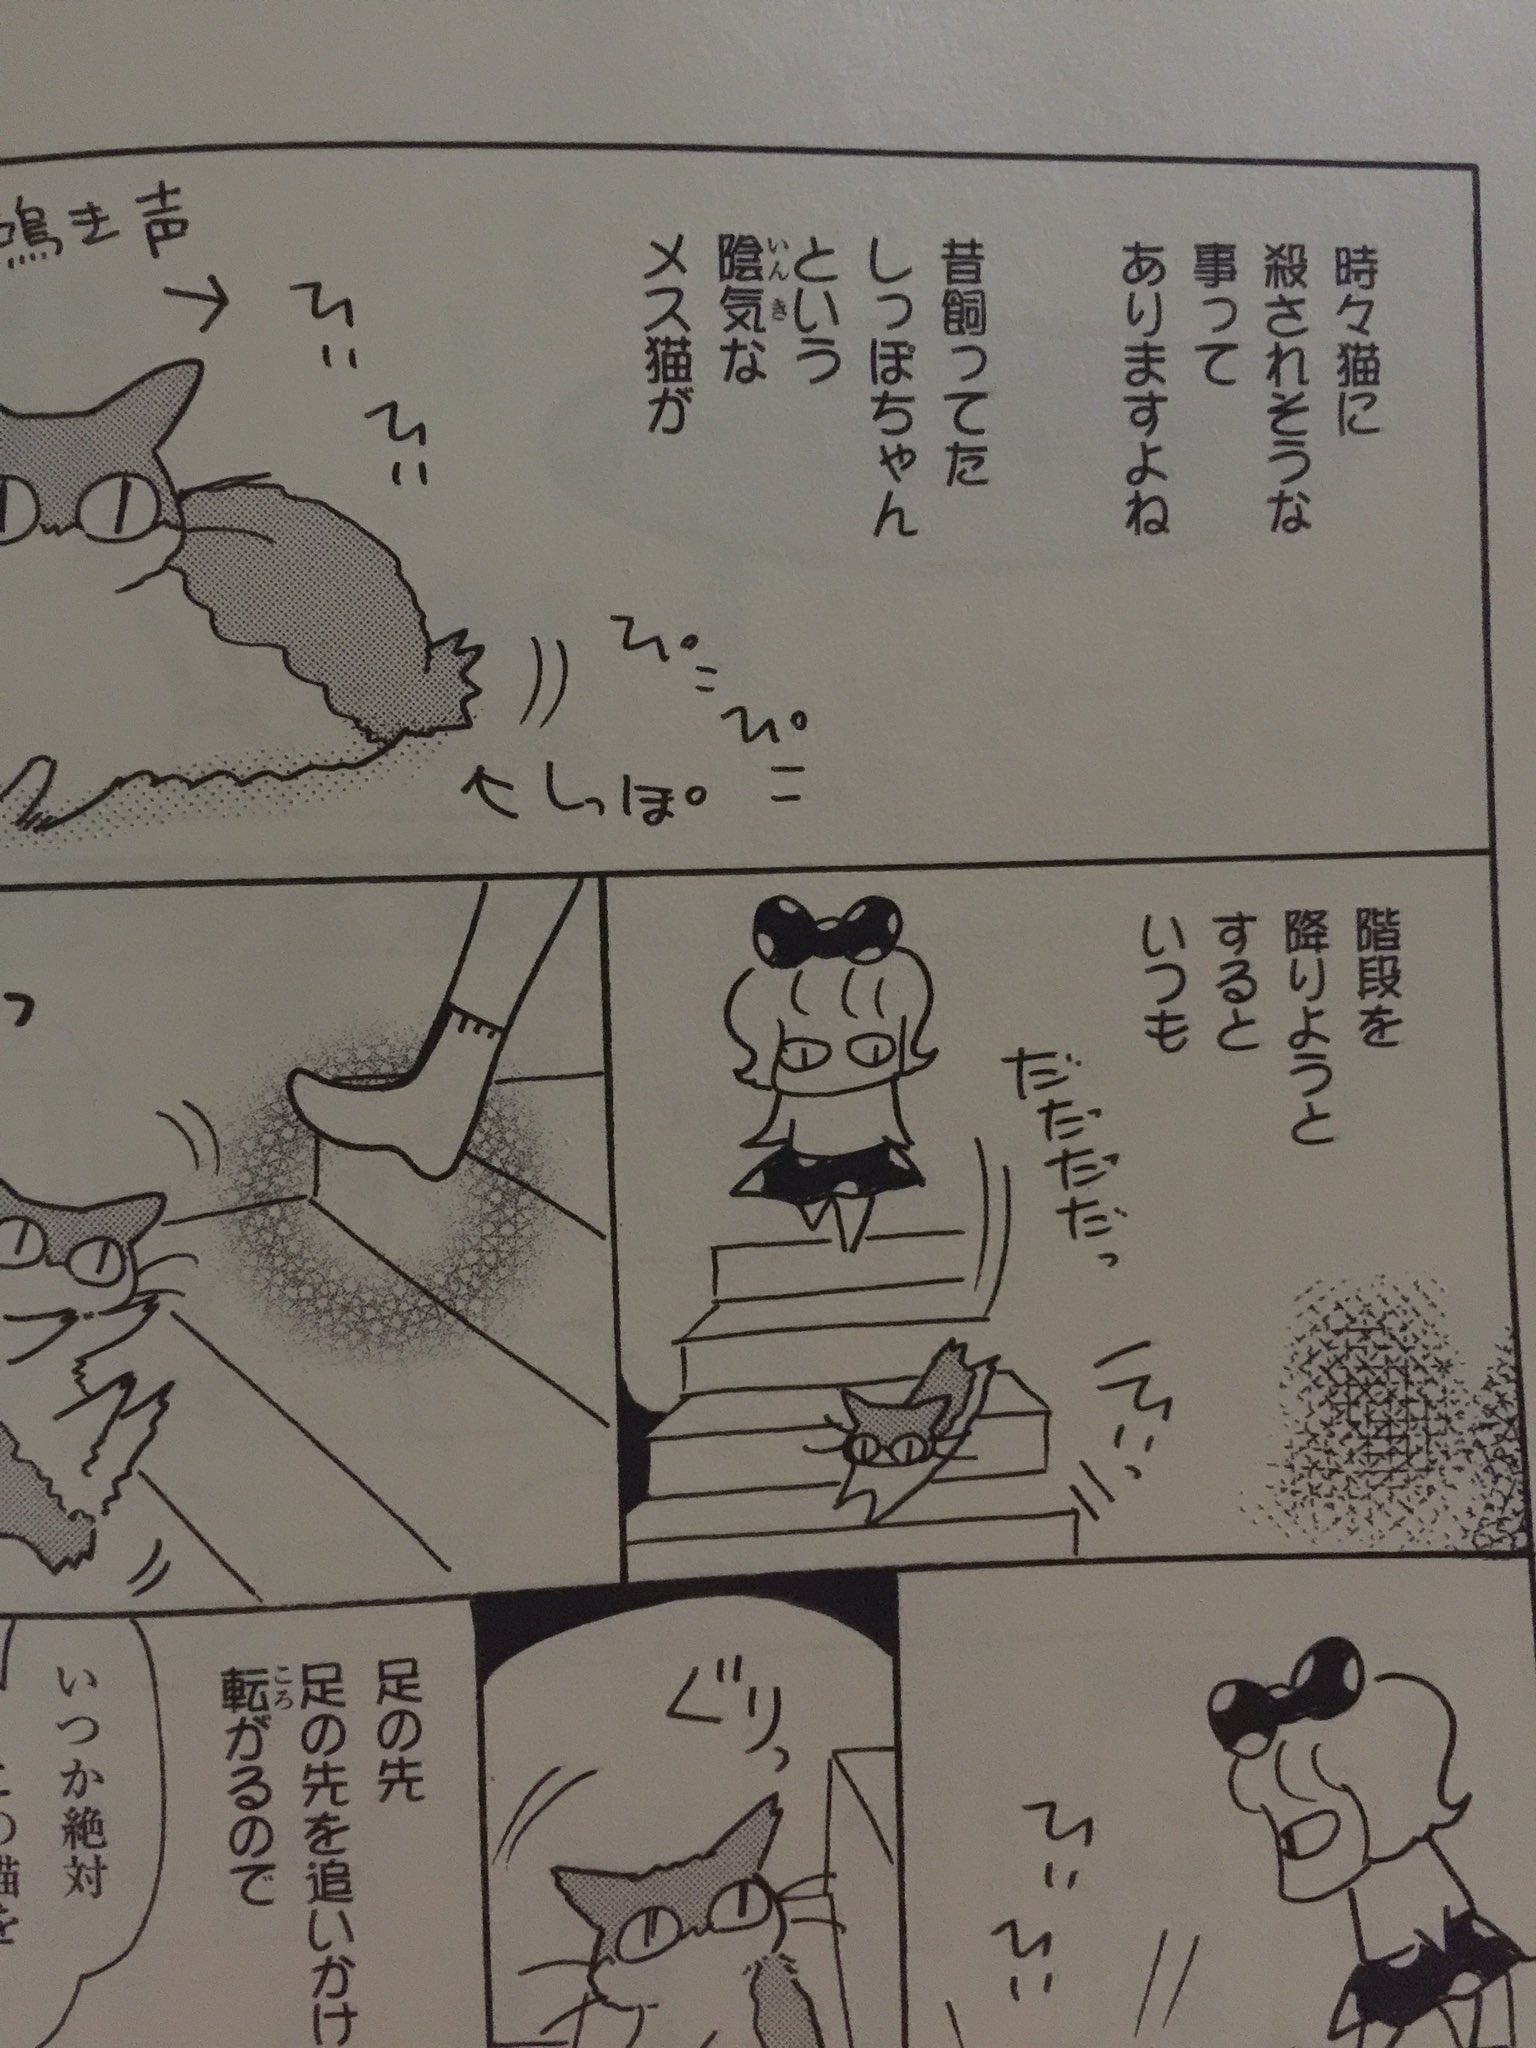 Tono Tonoちゃんのしましまえぶりでぃ ４巻ですが どこから読んでも面白い 猫日常本だから 是非によろしくお願いします